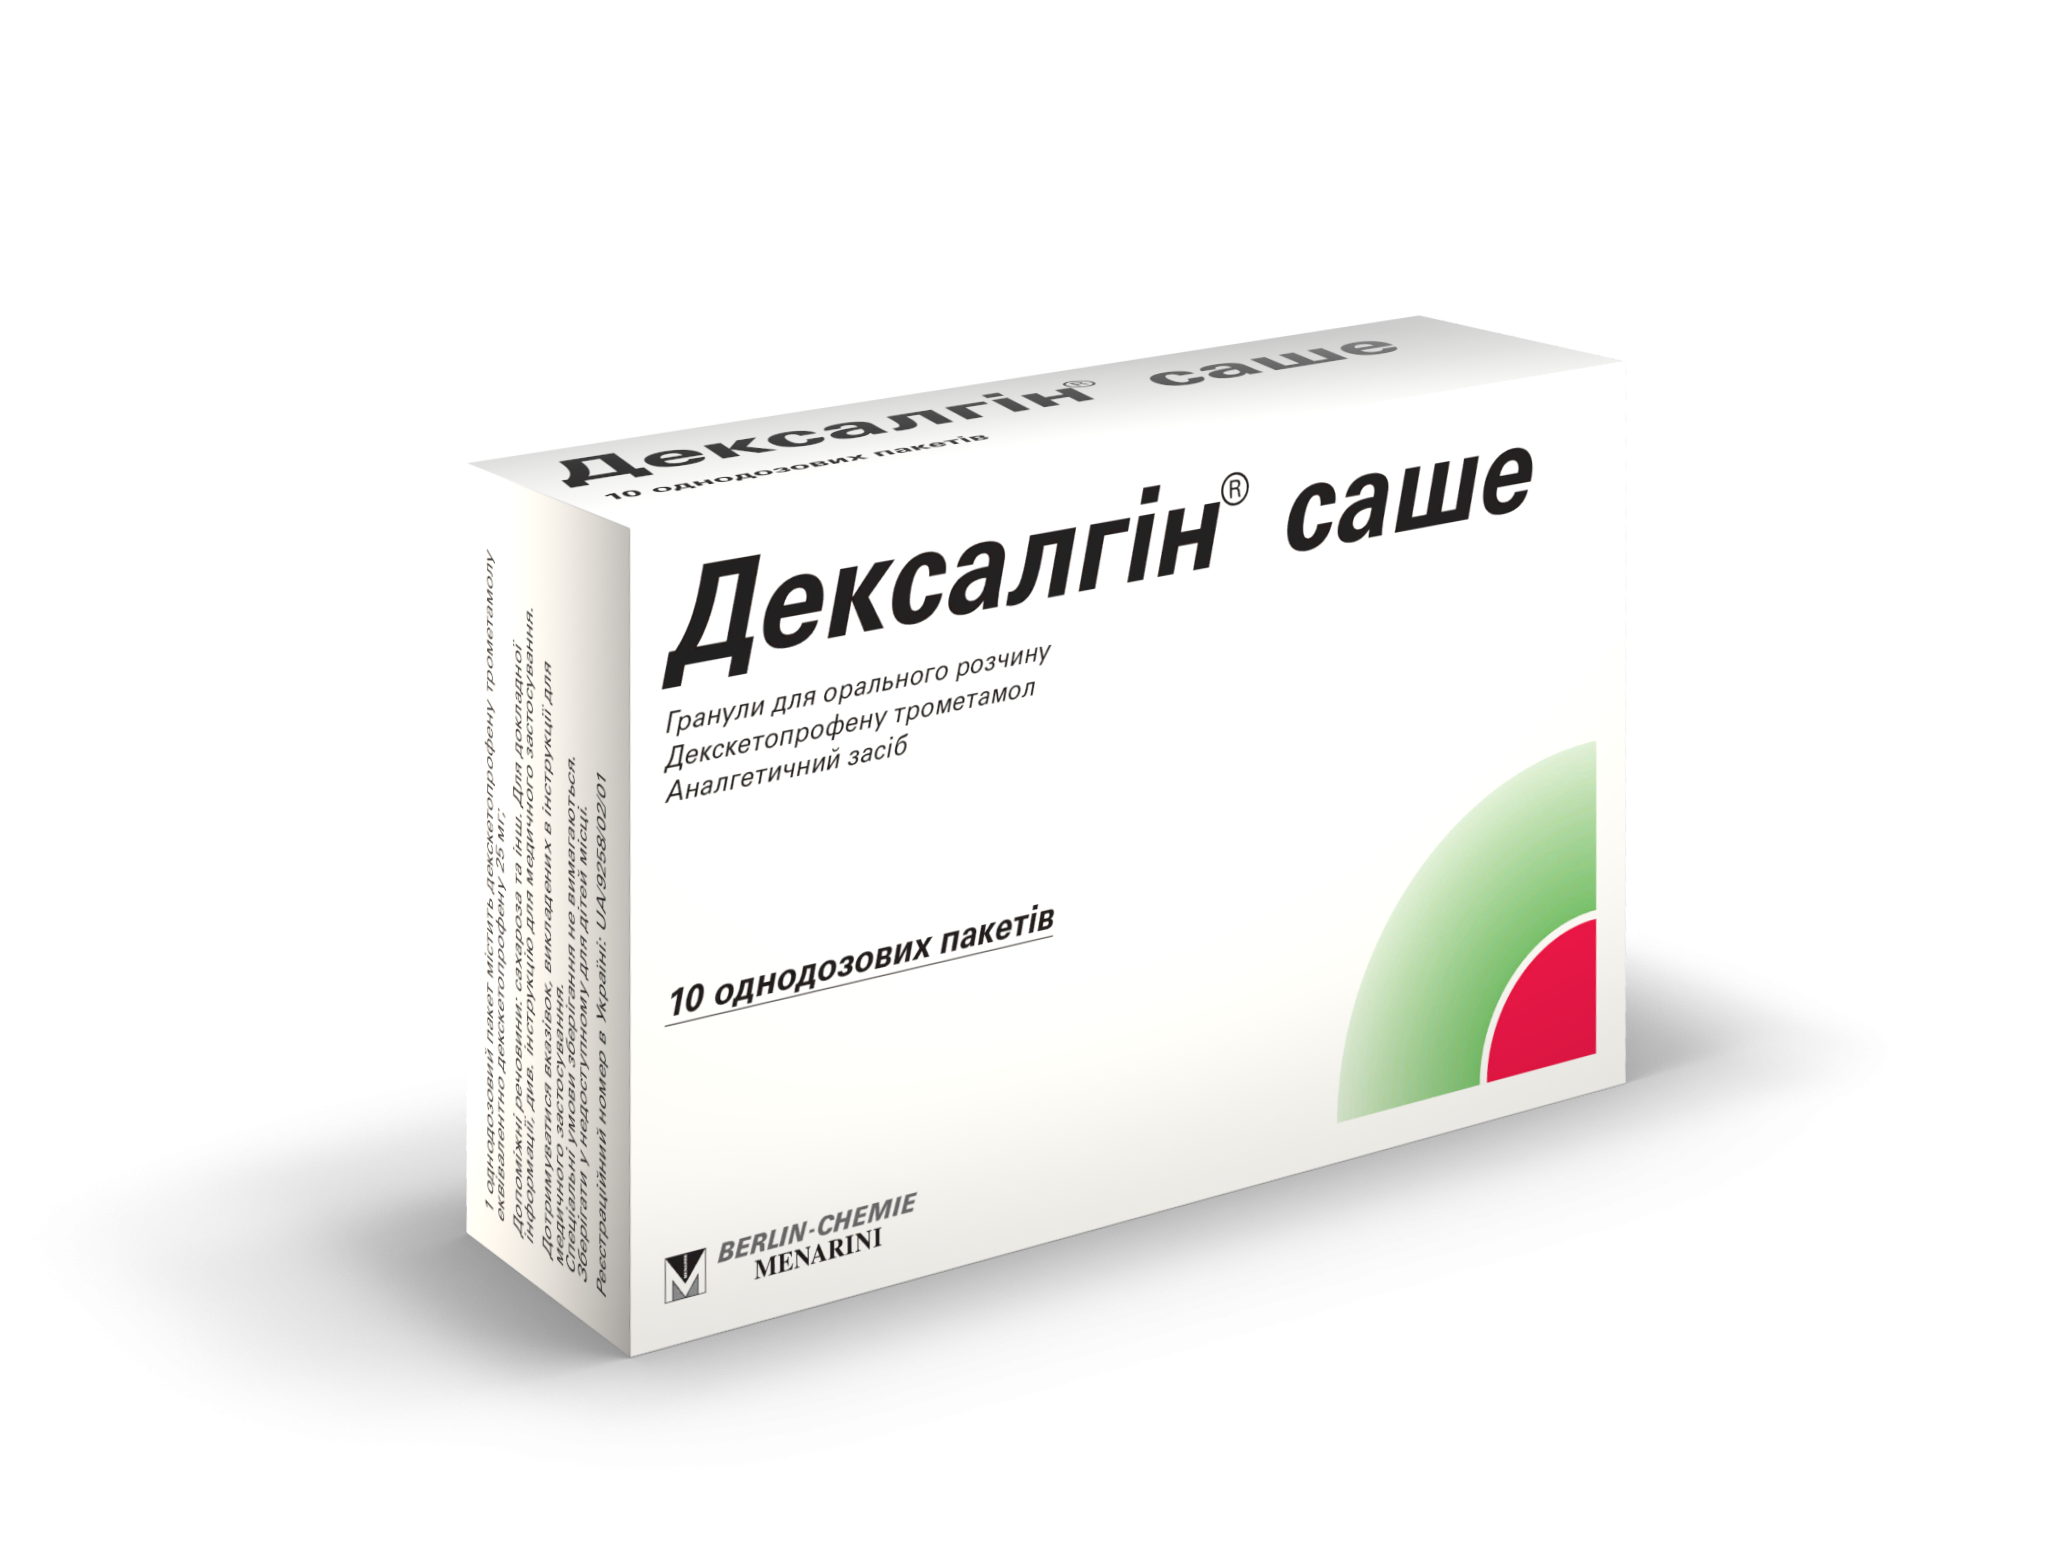 Дексалгин 25 мг №10 гранулы_6005c6ffe25bd.png